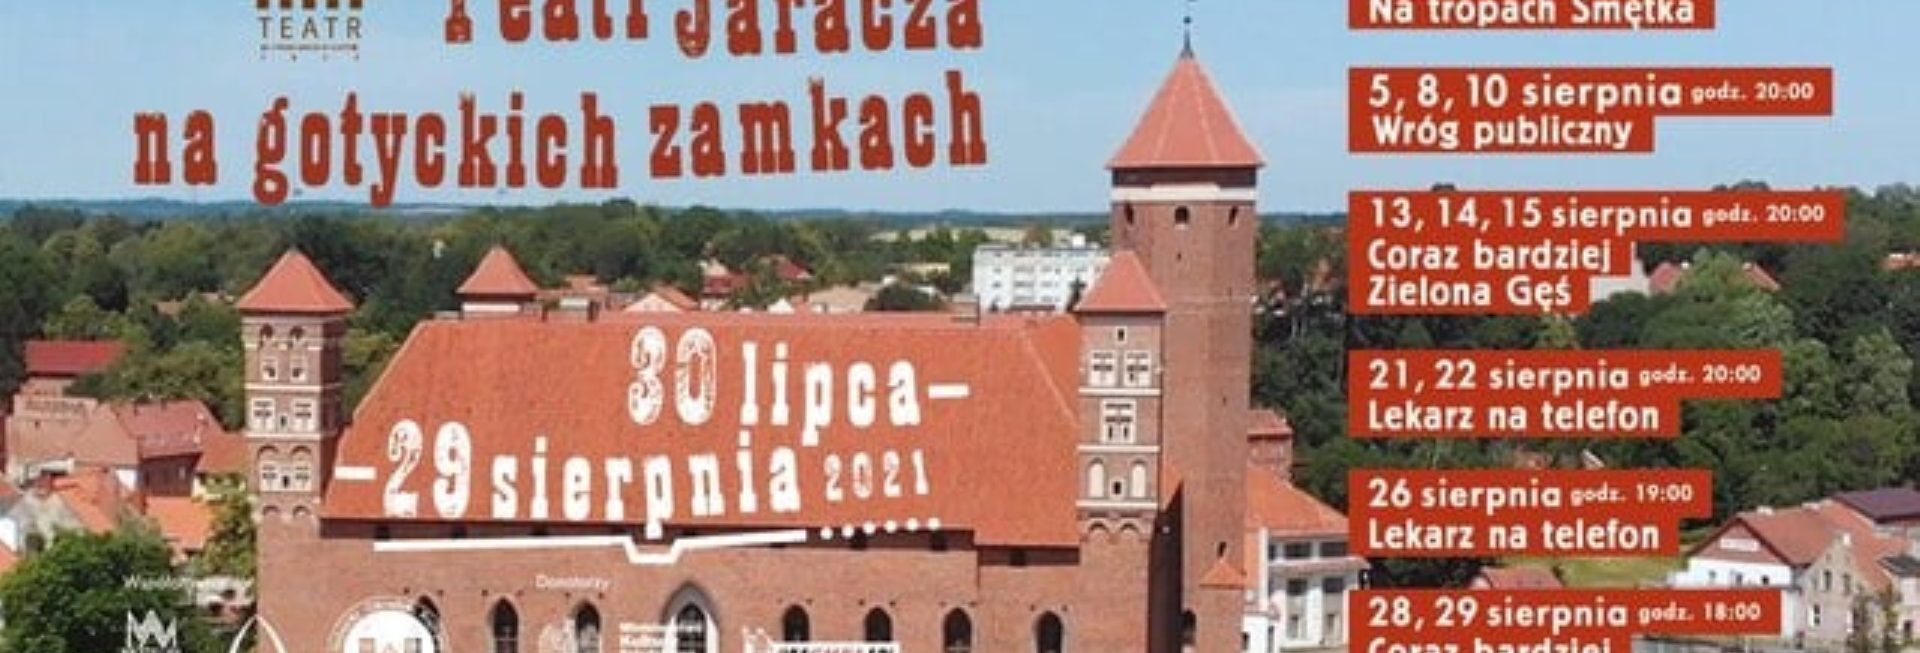 Plakat zapraszający na plenerowy spektakl teatralny przygotowany przez Teatr Jaracza w Olsztynie, Teatr na Zamku - "Coraz bardziej Zielona Gęś" - Lidzbark Warmiński 2021. Na plakacie widok Zamku w Lidzbarku Warmińskim z lotu ptaka. 